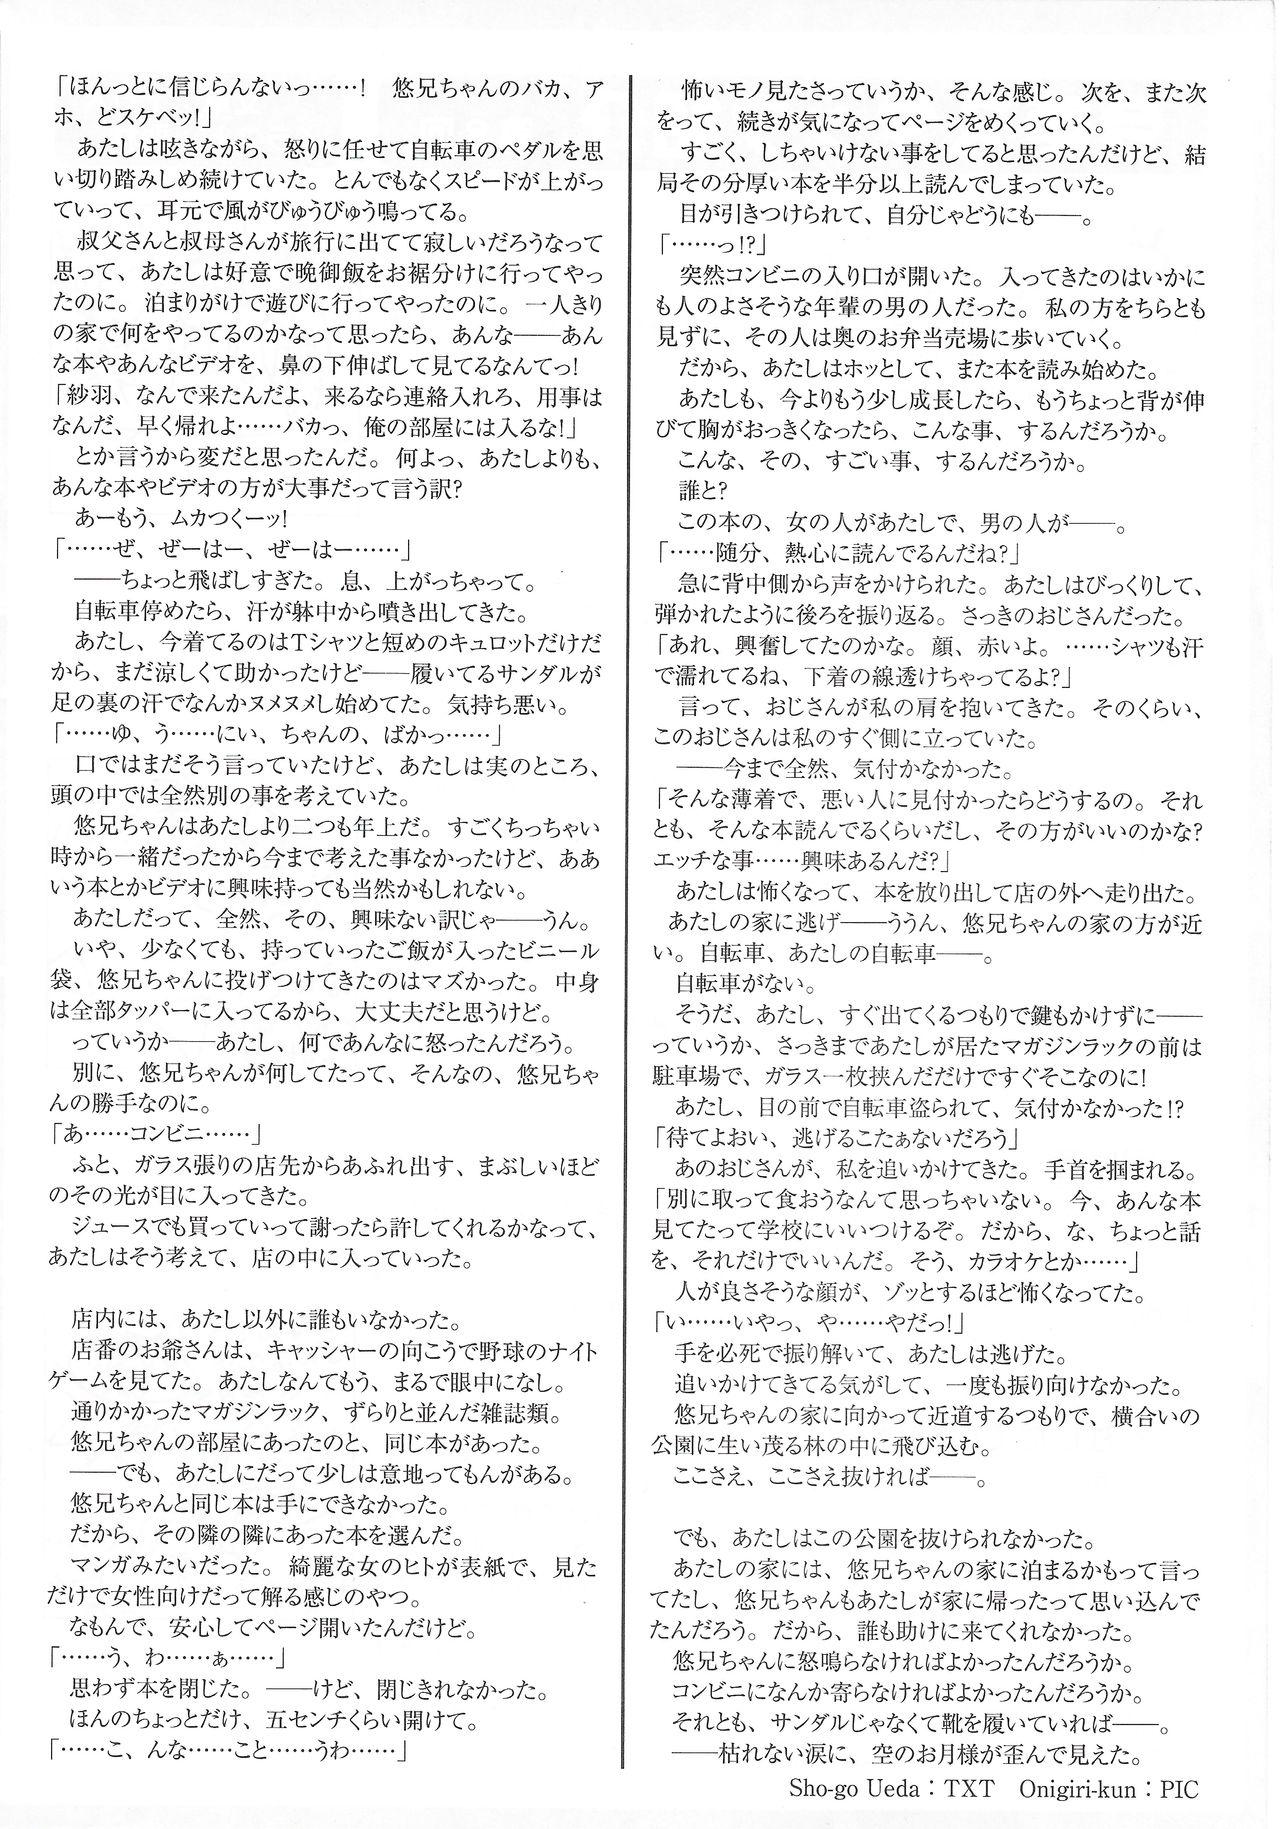 Arisu no Denchi Bakudan Vol. 13 22